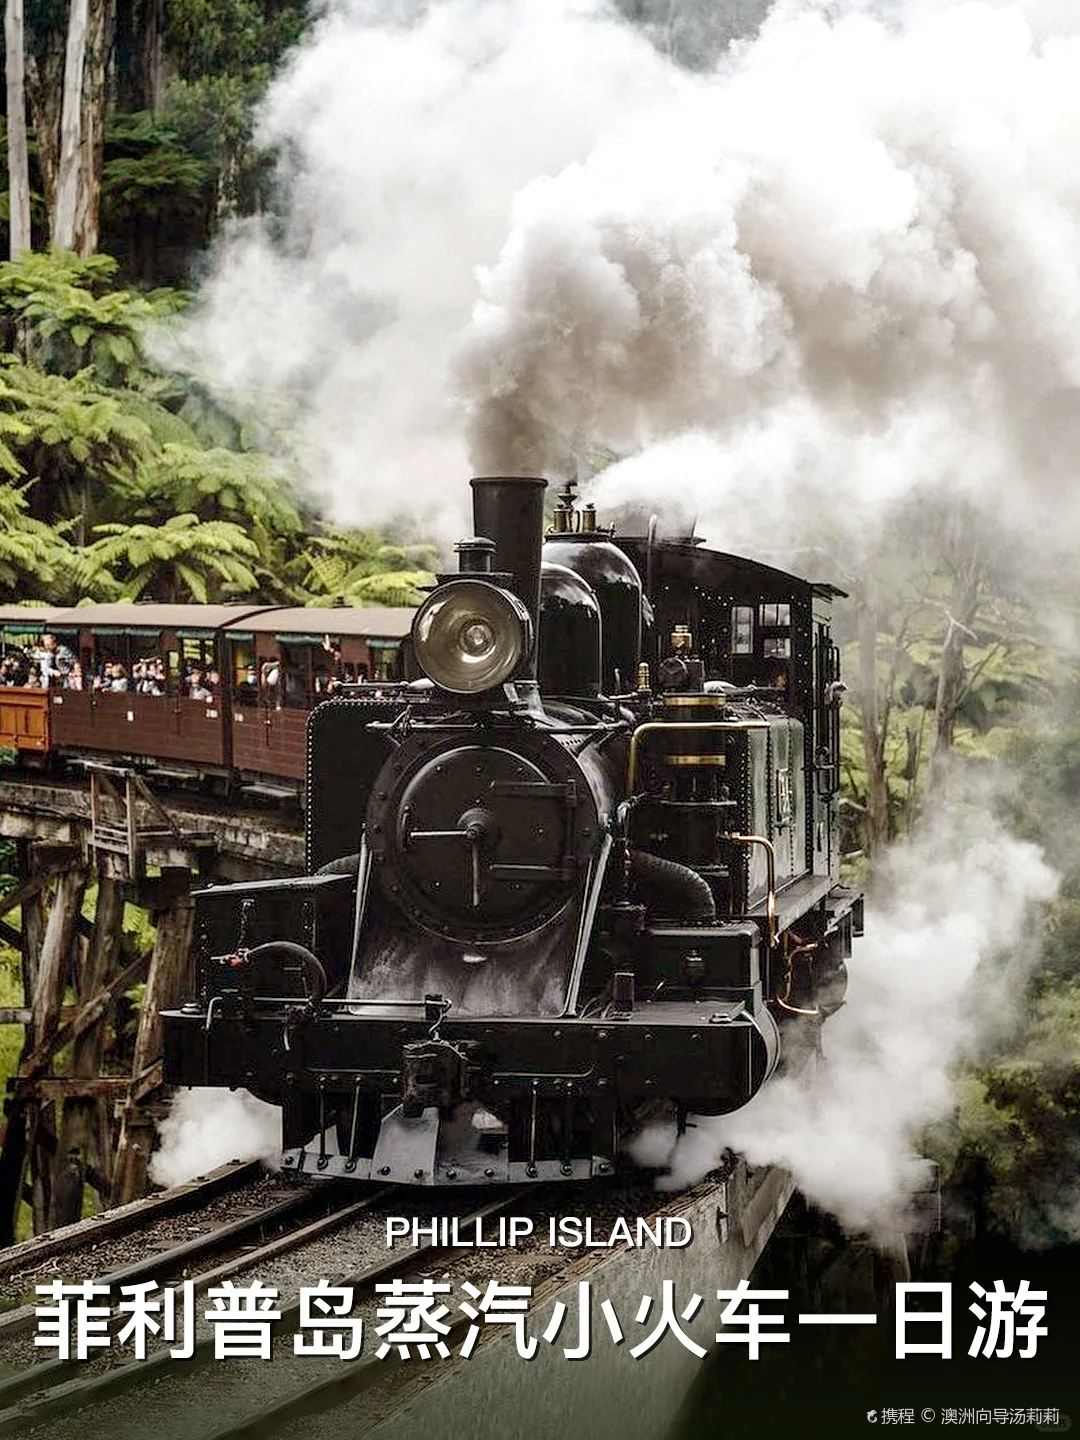 澳洲菲利普岛一日游|玩转蒸汽火车+企鹅岛